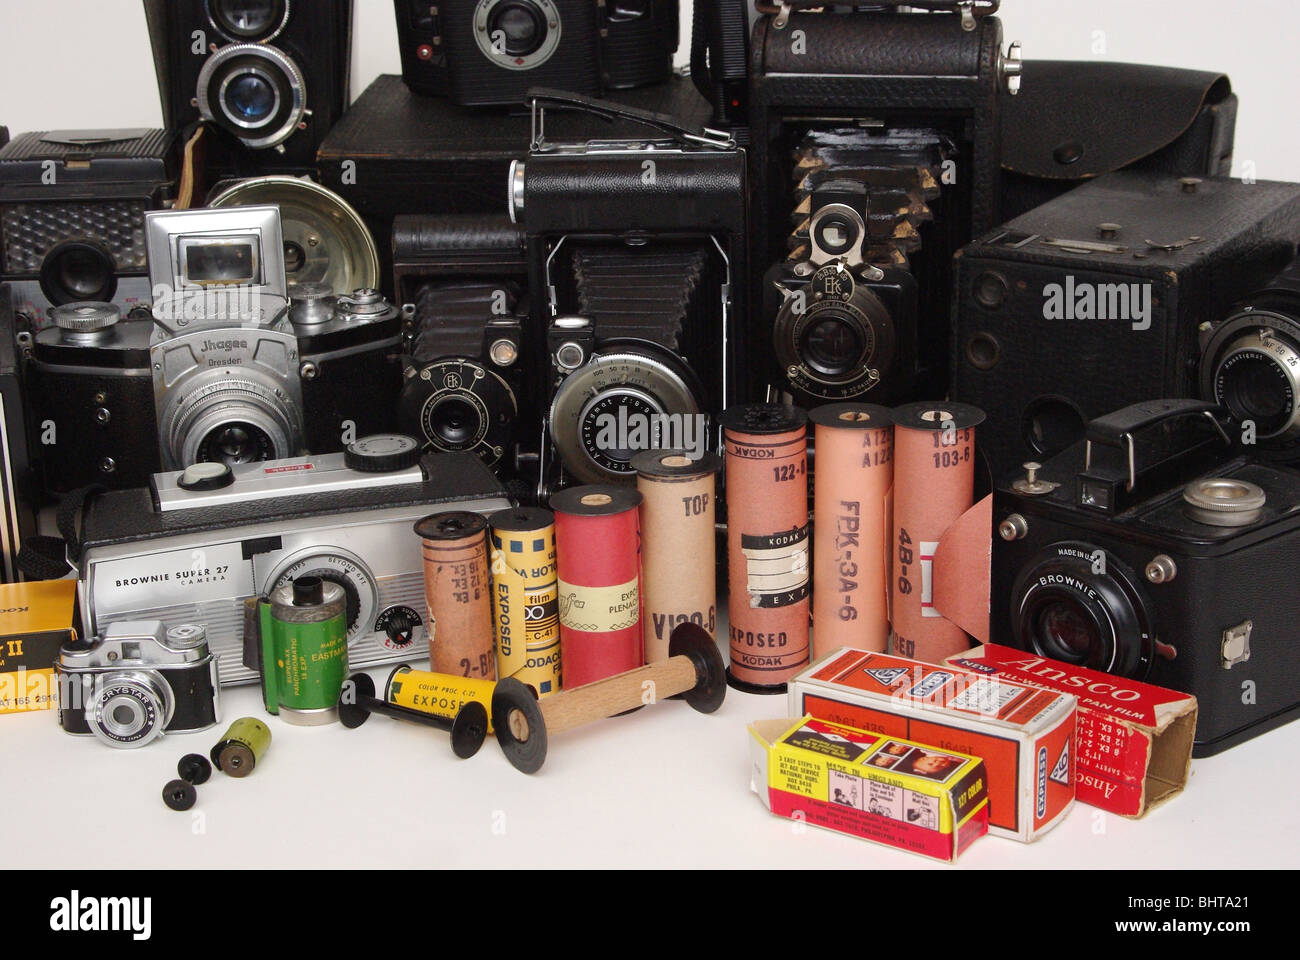 Vintage film di molti formati diversi e rende (Kodak, Agfa e altri) lungo con telecamere si è trovato in (Brownie, Agfa, piegatura e box-type). Foto Stock